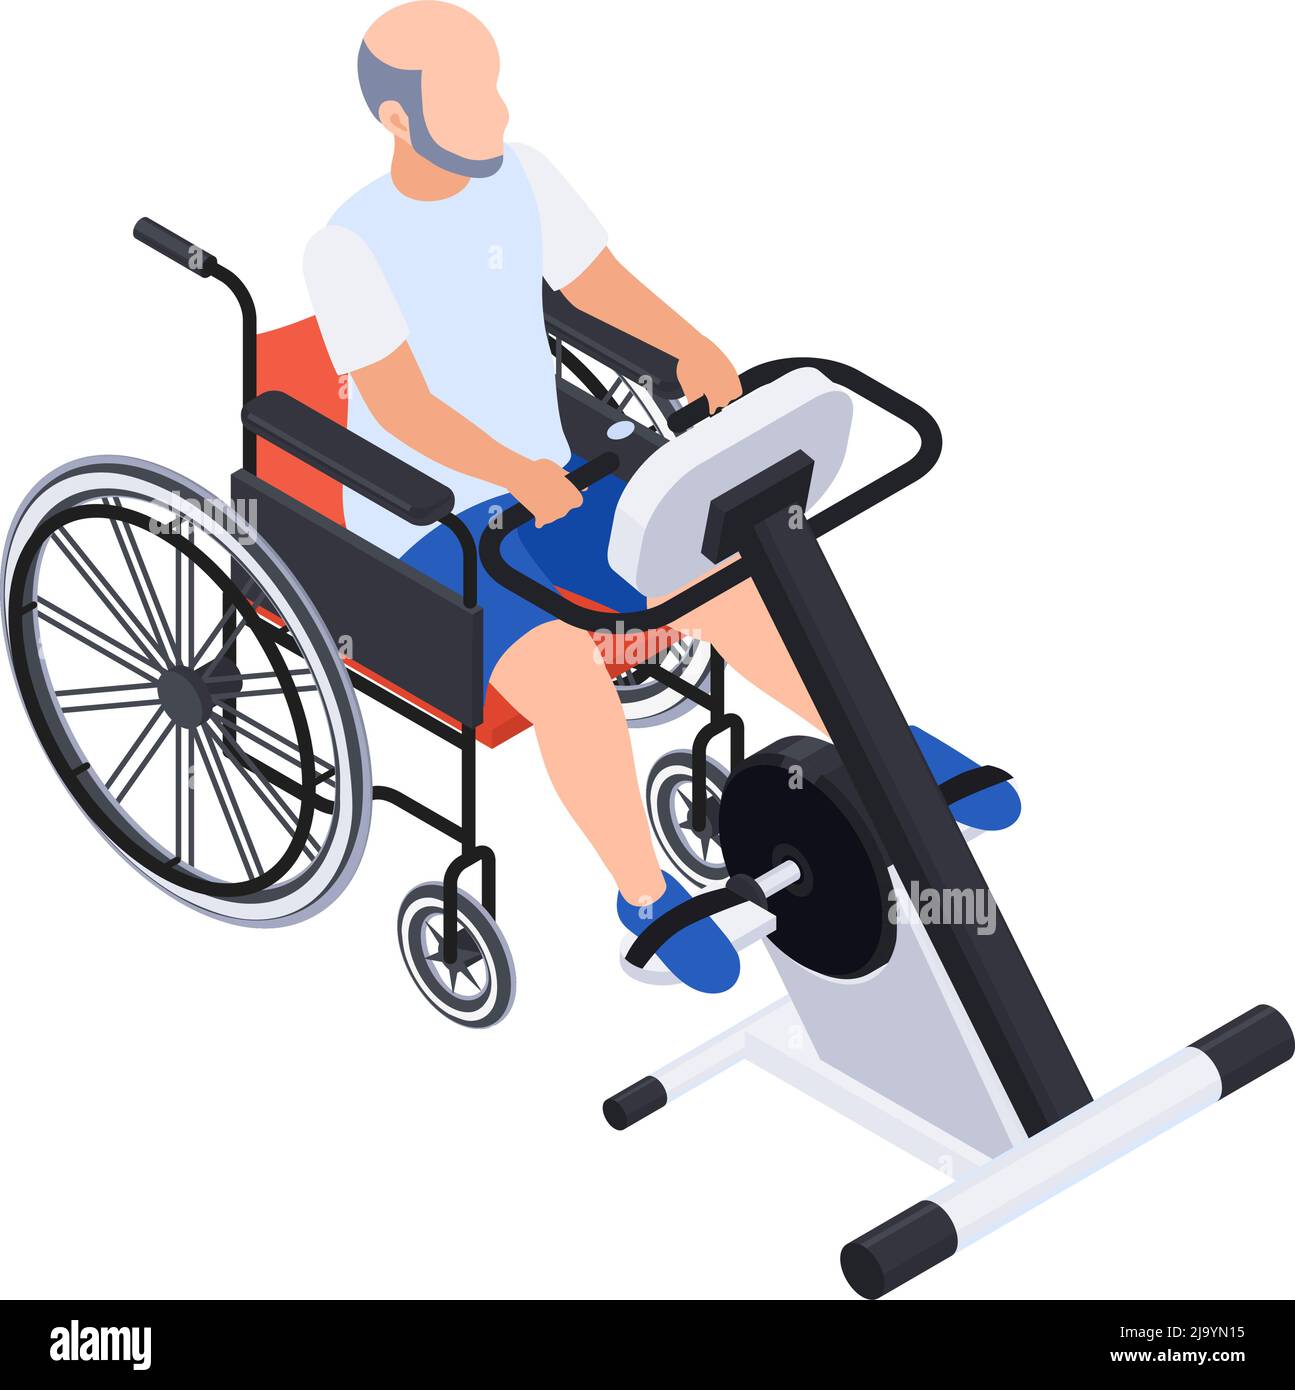 Physiotherapie Rehabilitation isometrische Zusammensetzung mit Mann auf Rollstuhl mit Trainingsmaschine Vektor-Illustration Stock Vektor